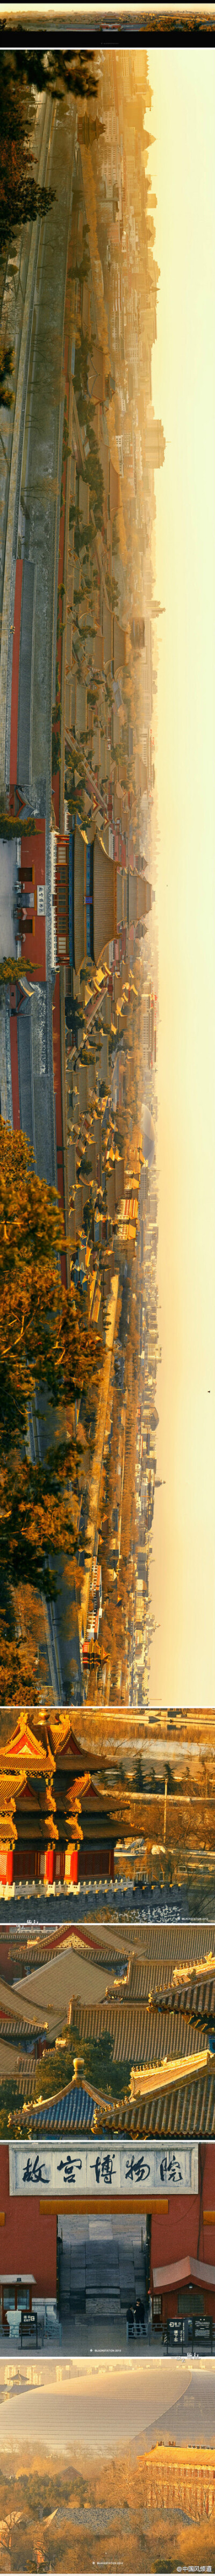 【故宫全景】2亿4千万像素。一座城市，有历史才有灵魂